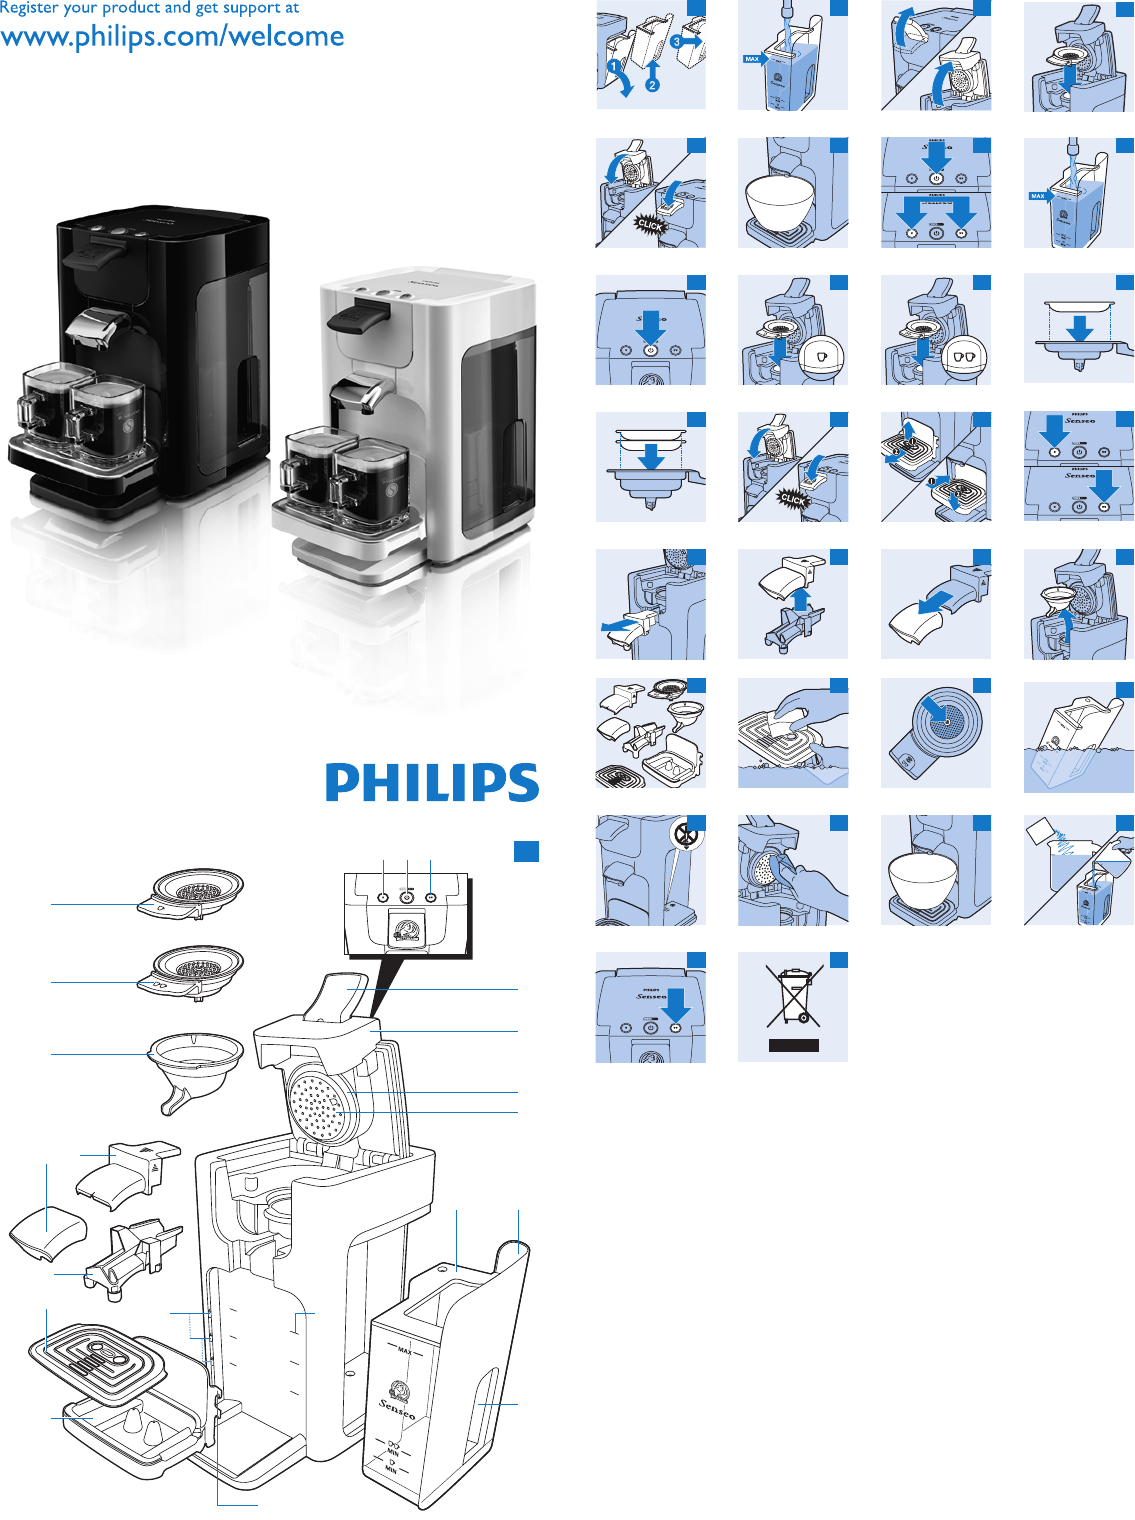 lancering onderwerpen Kinderpaleis Handleiding Philips Senseo HD 7860 (pagina 1 van 9) (Engels)